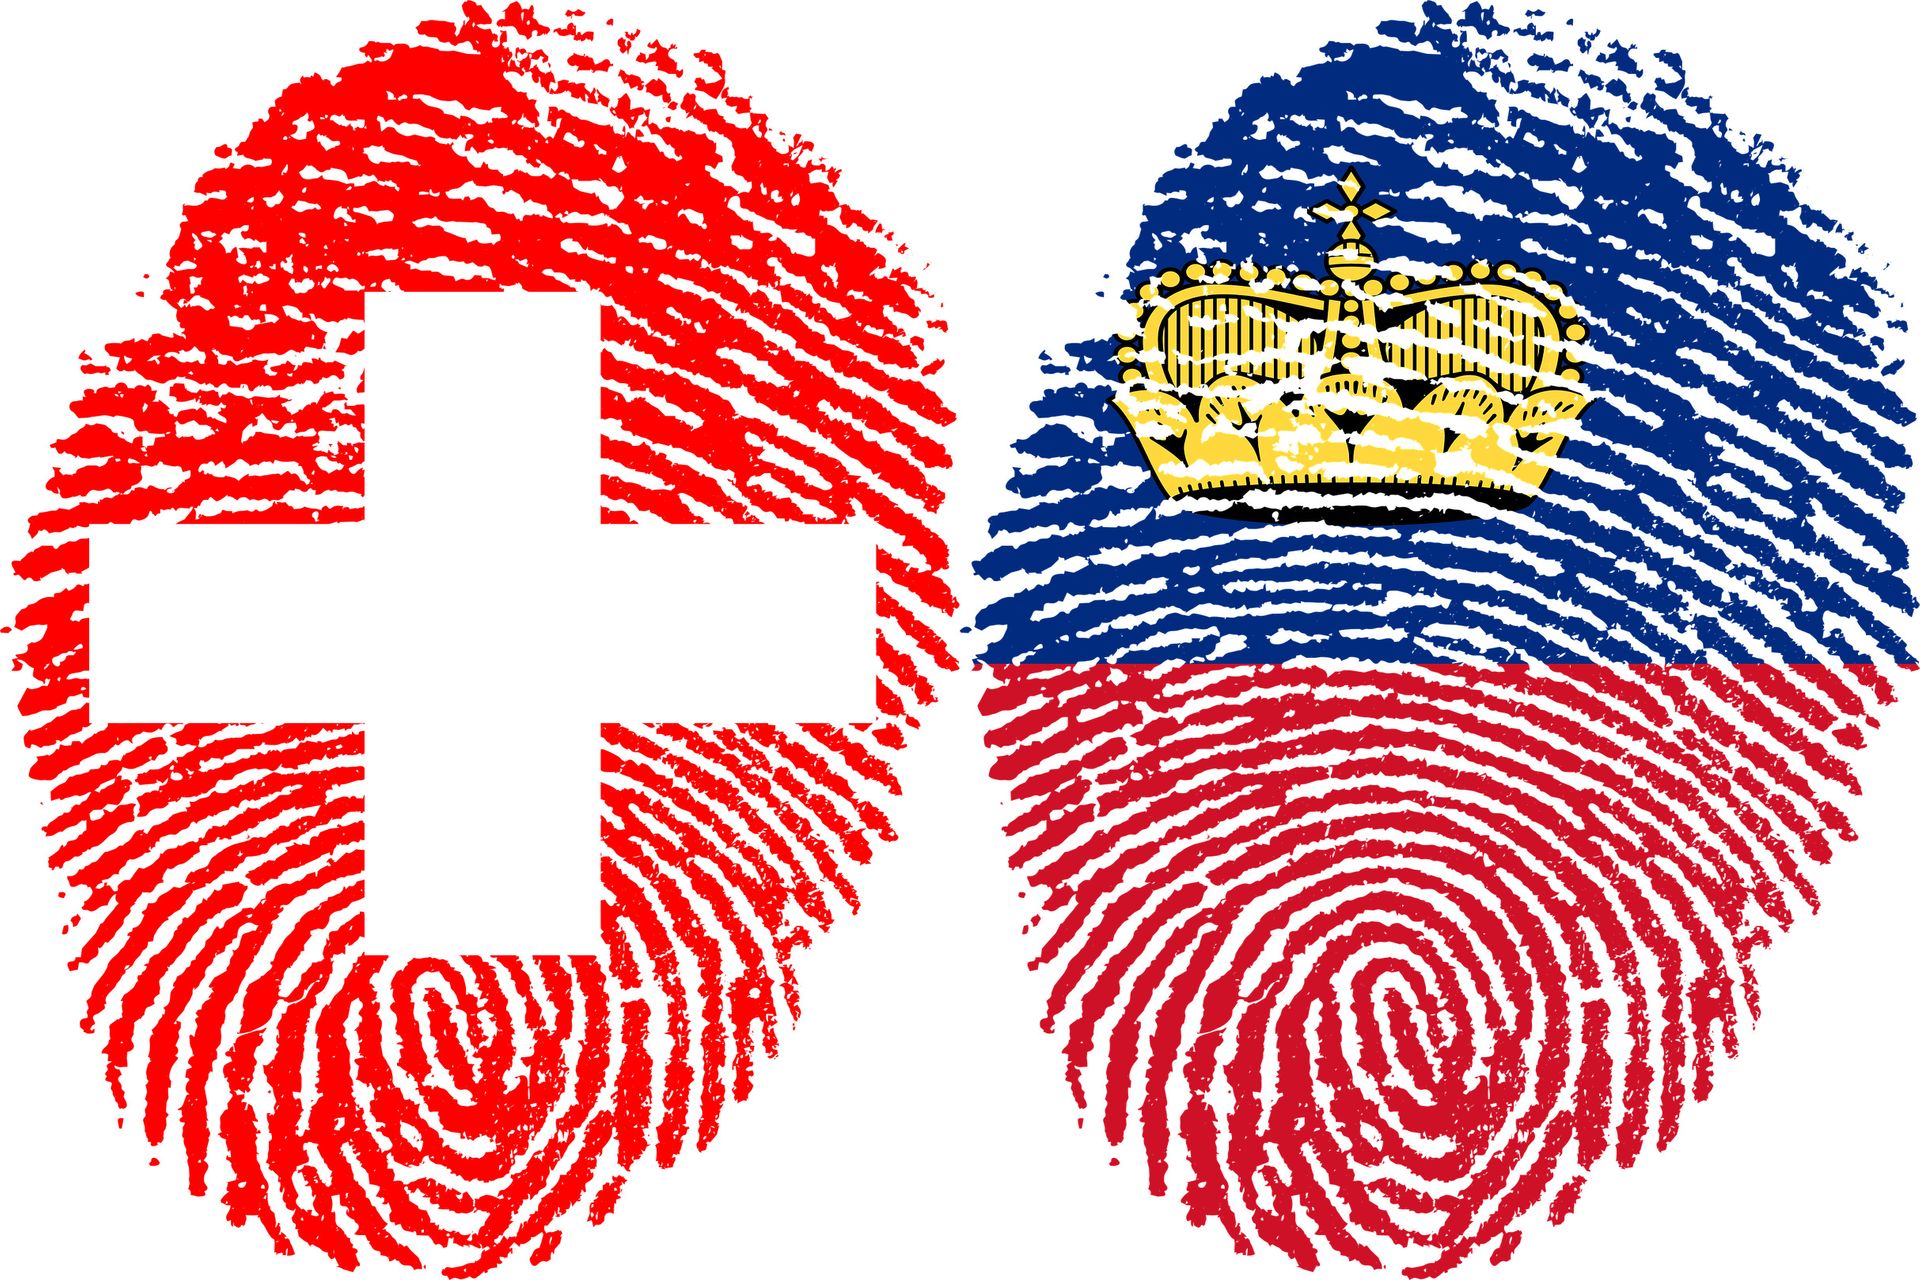 Impronte digitali raffiguranti le bandiere della Confederazione Svizzera e del Principato del Liechtenstein